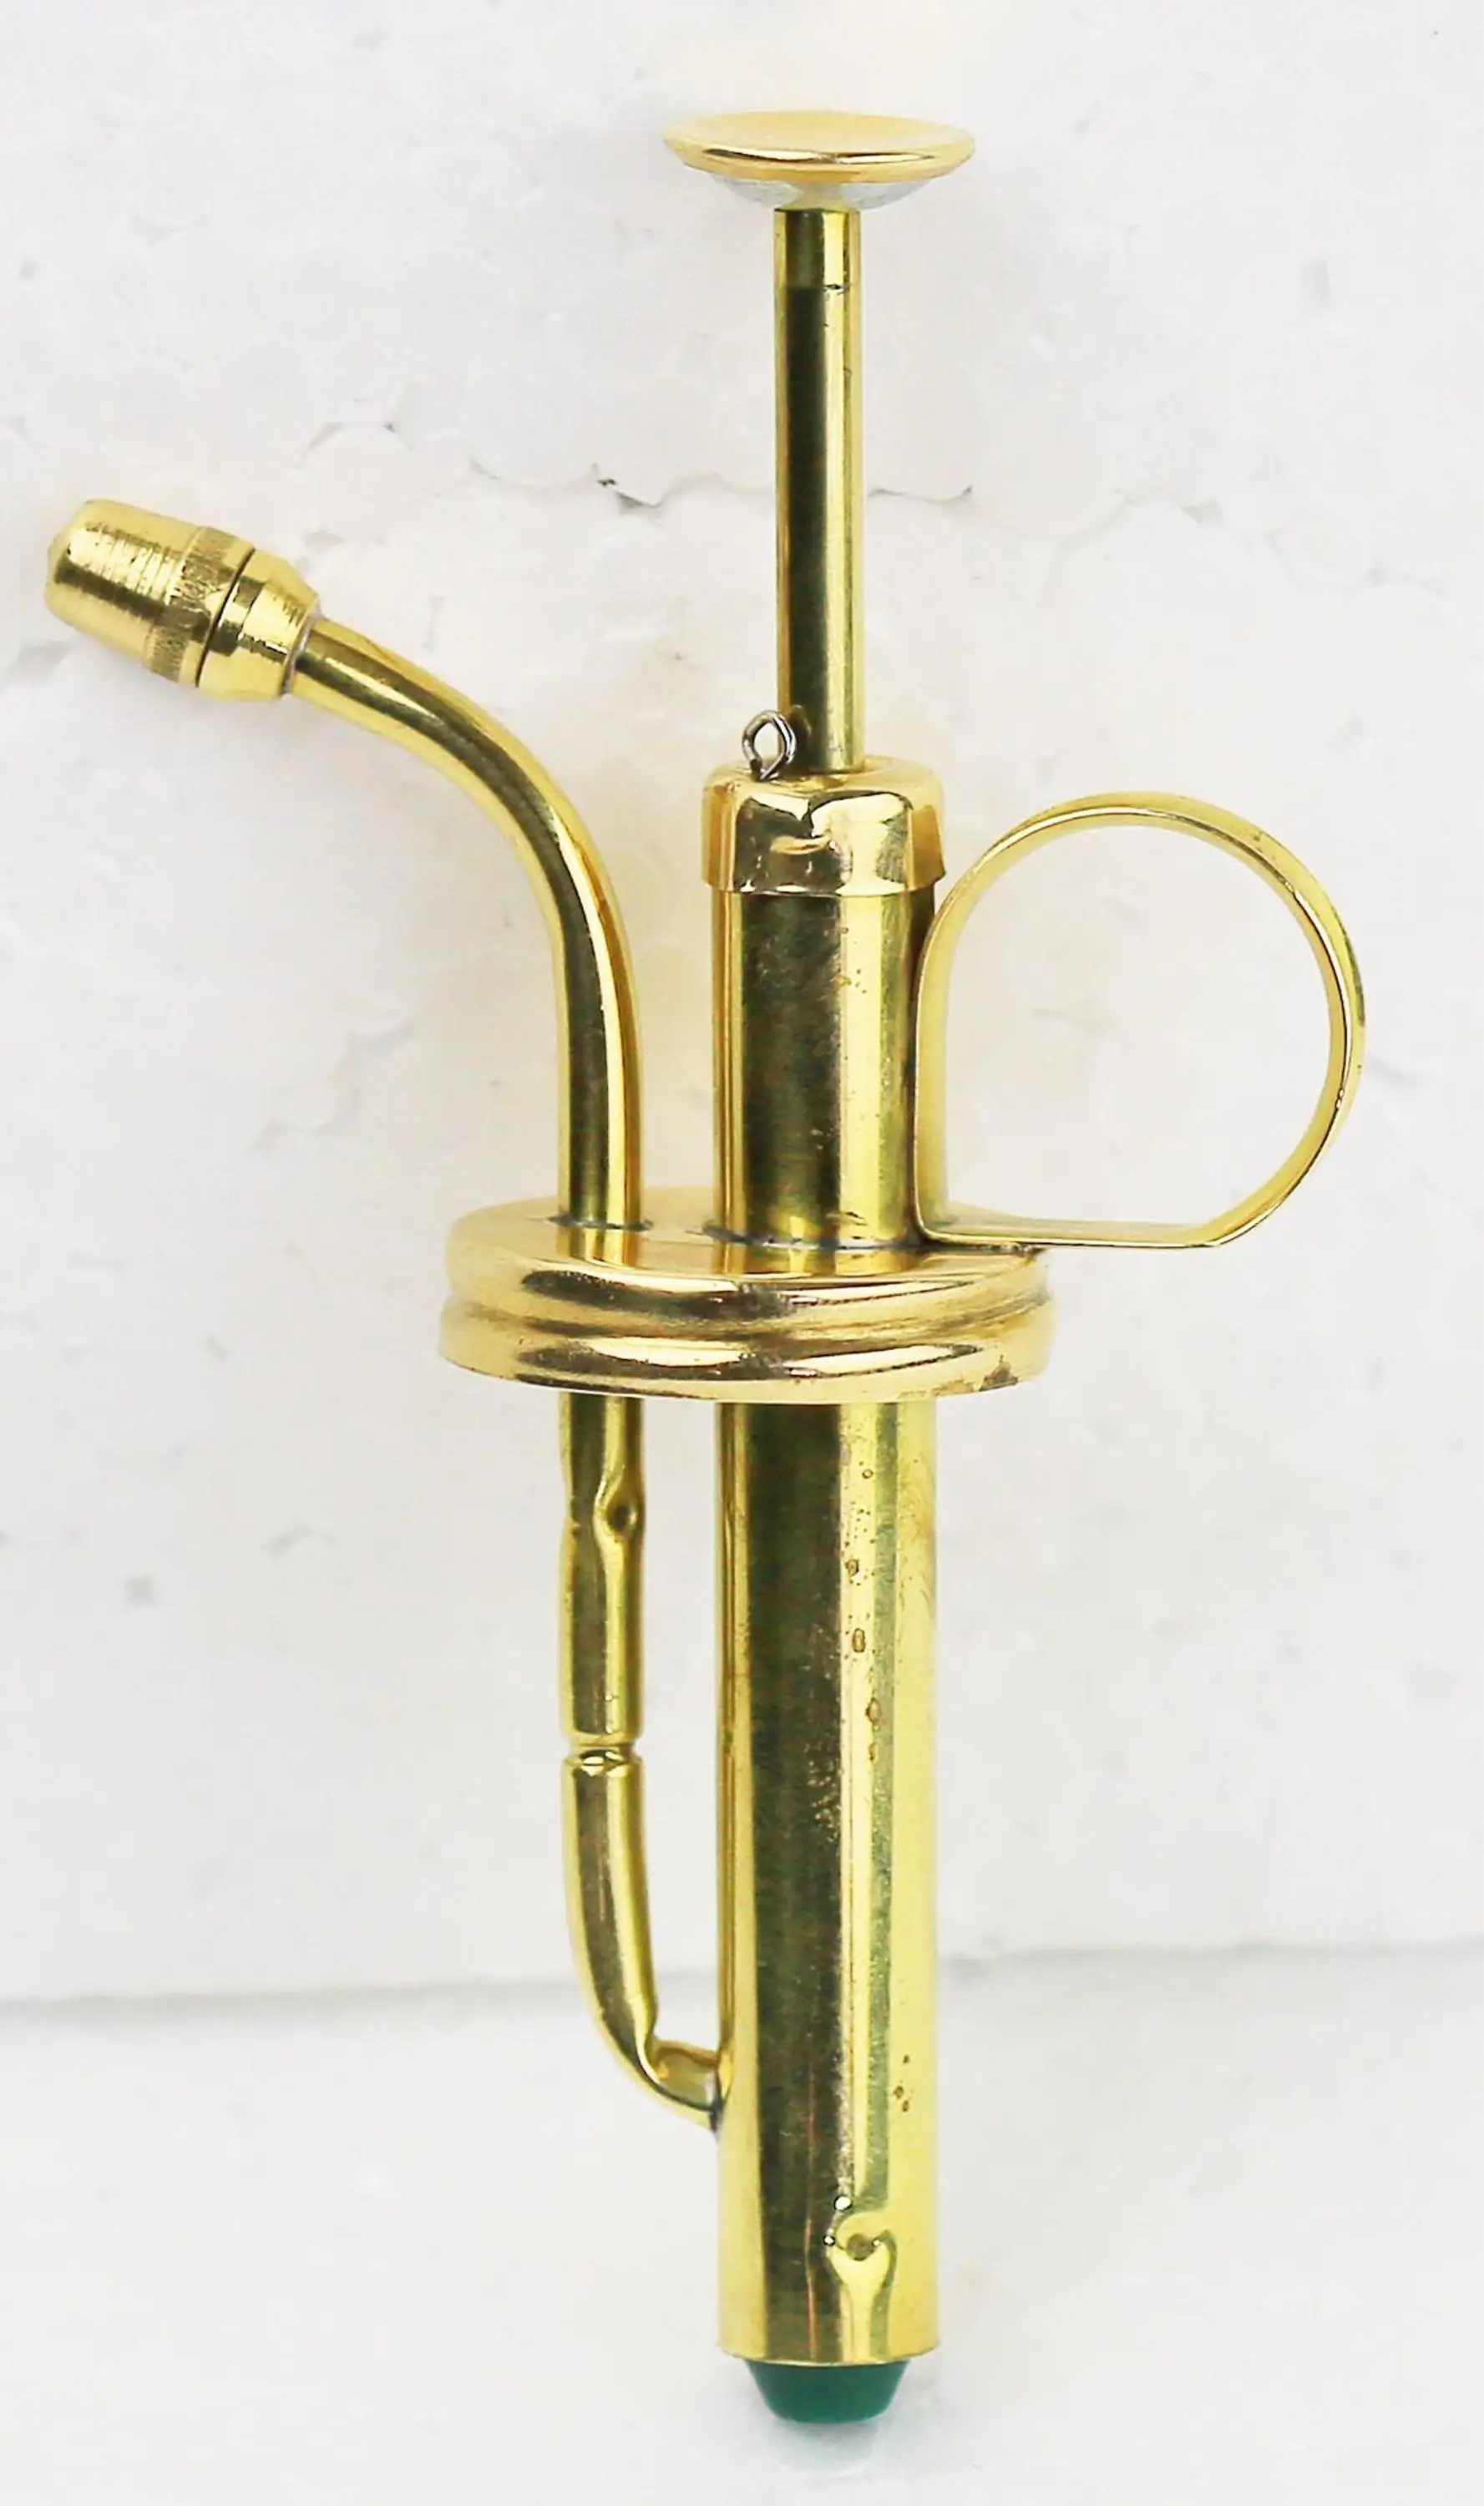 brass hand pump sprayer Kitchen mist olive cooking oil sprayer pump abs plastic Pump Sprayer brass double use sprayer dosage